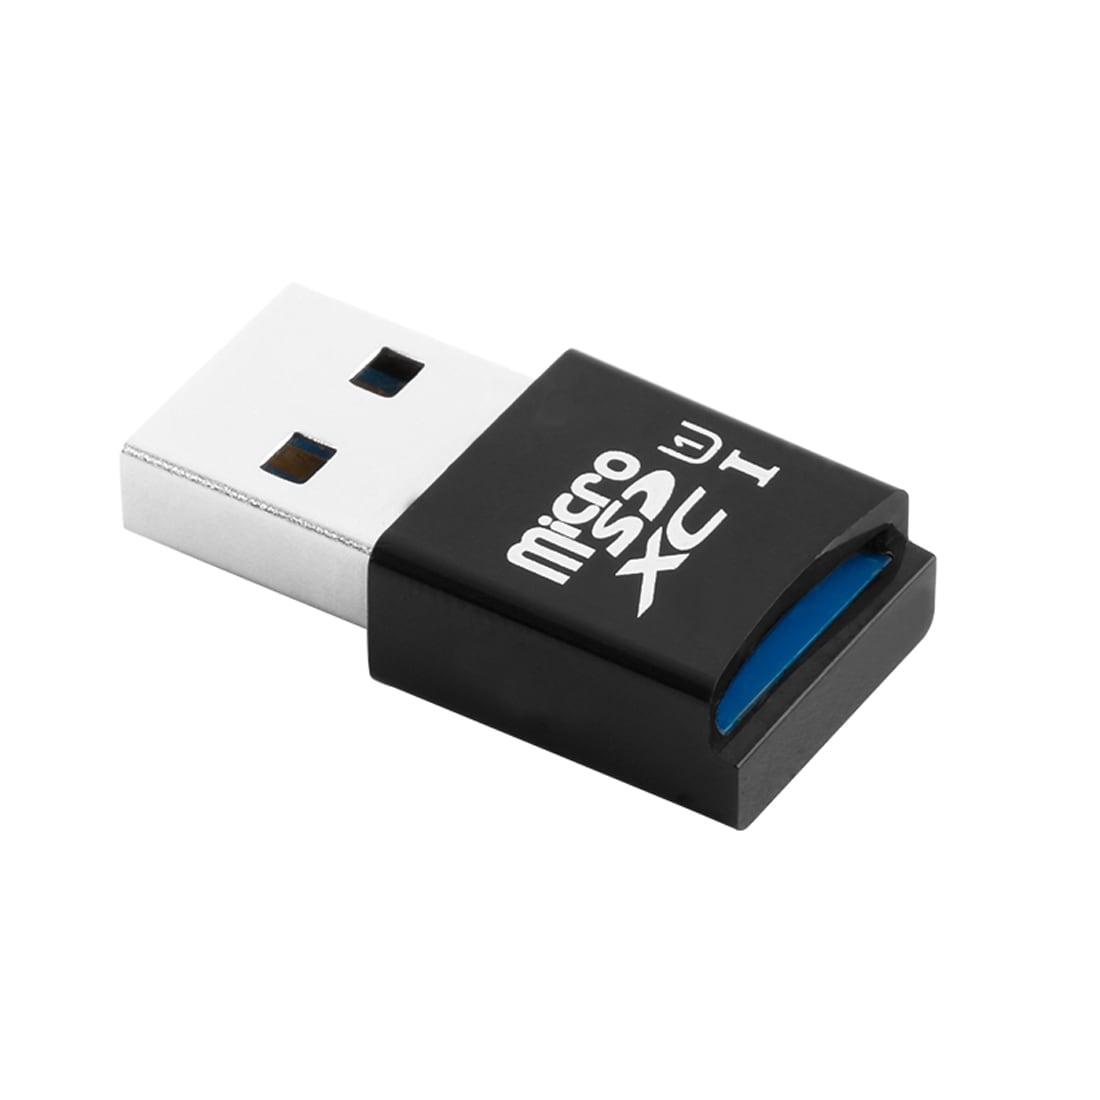 Kaartlezer / kaartadapter voor USB 3.0 naar MicroSD